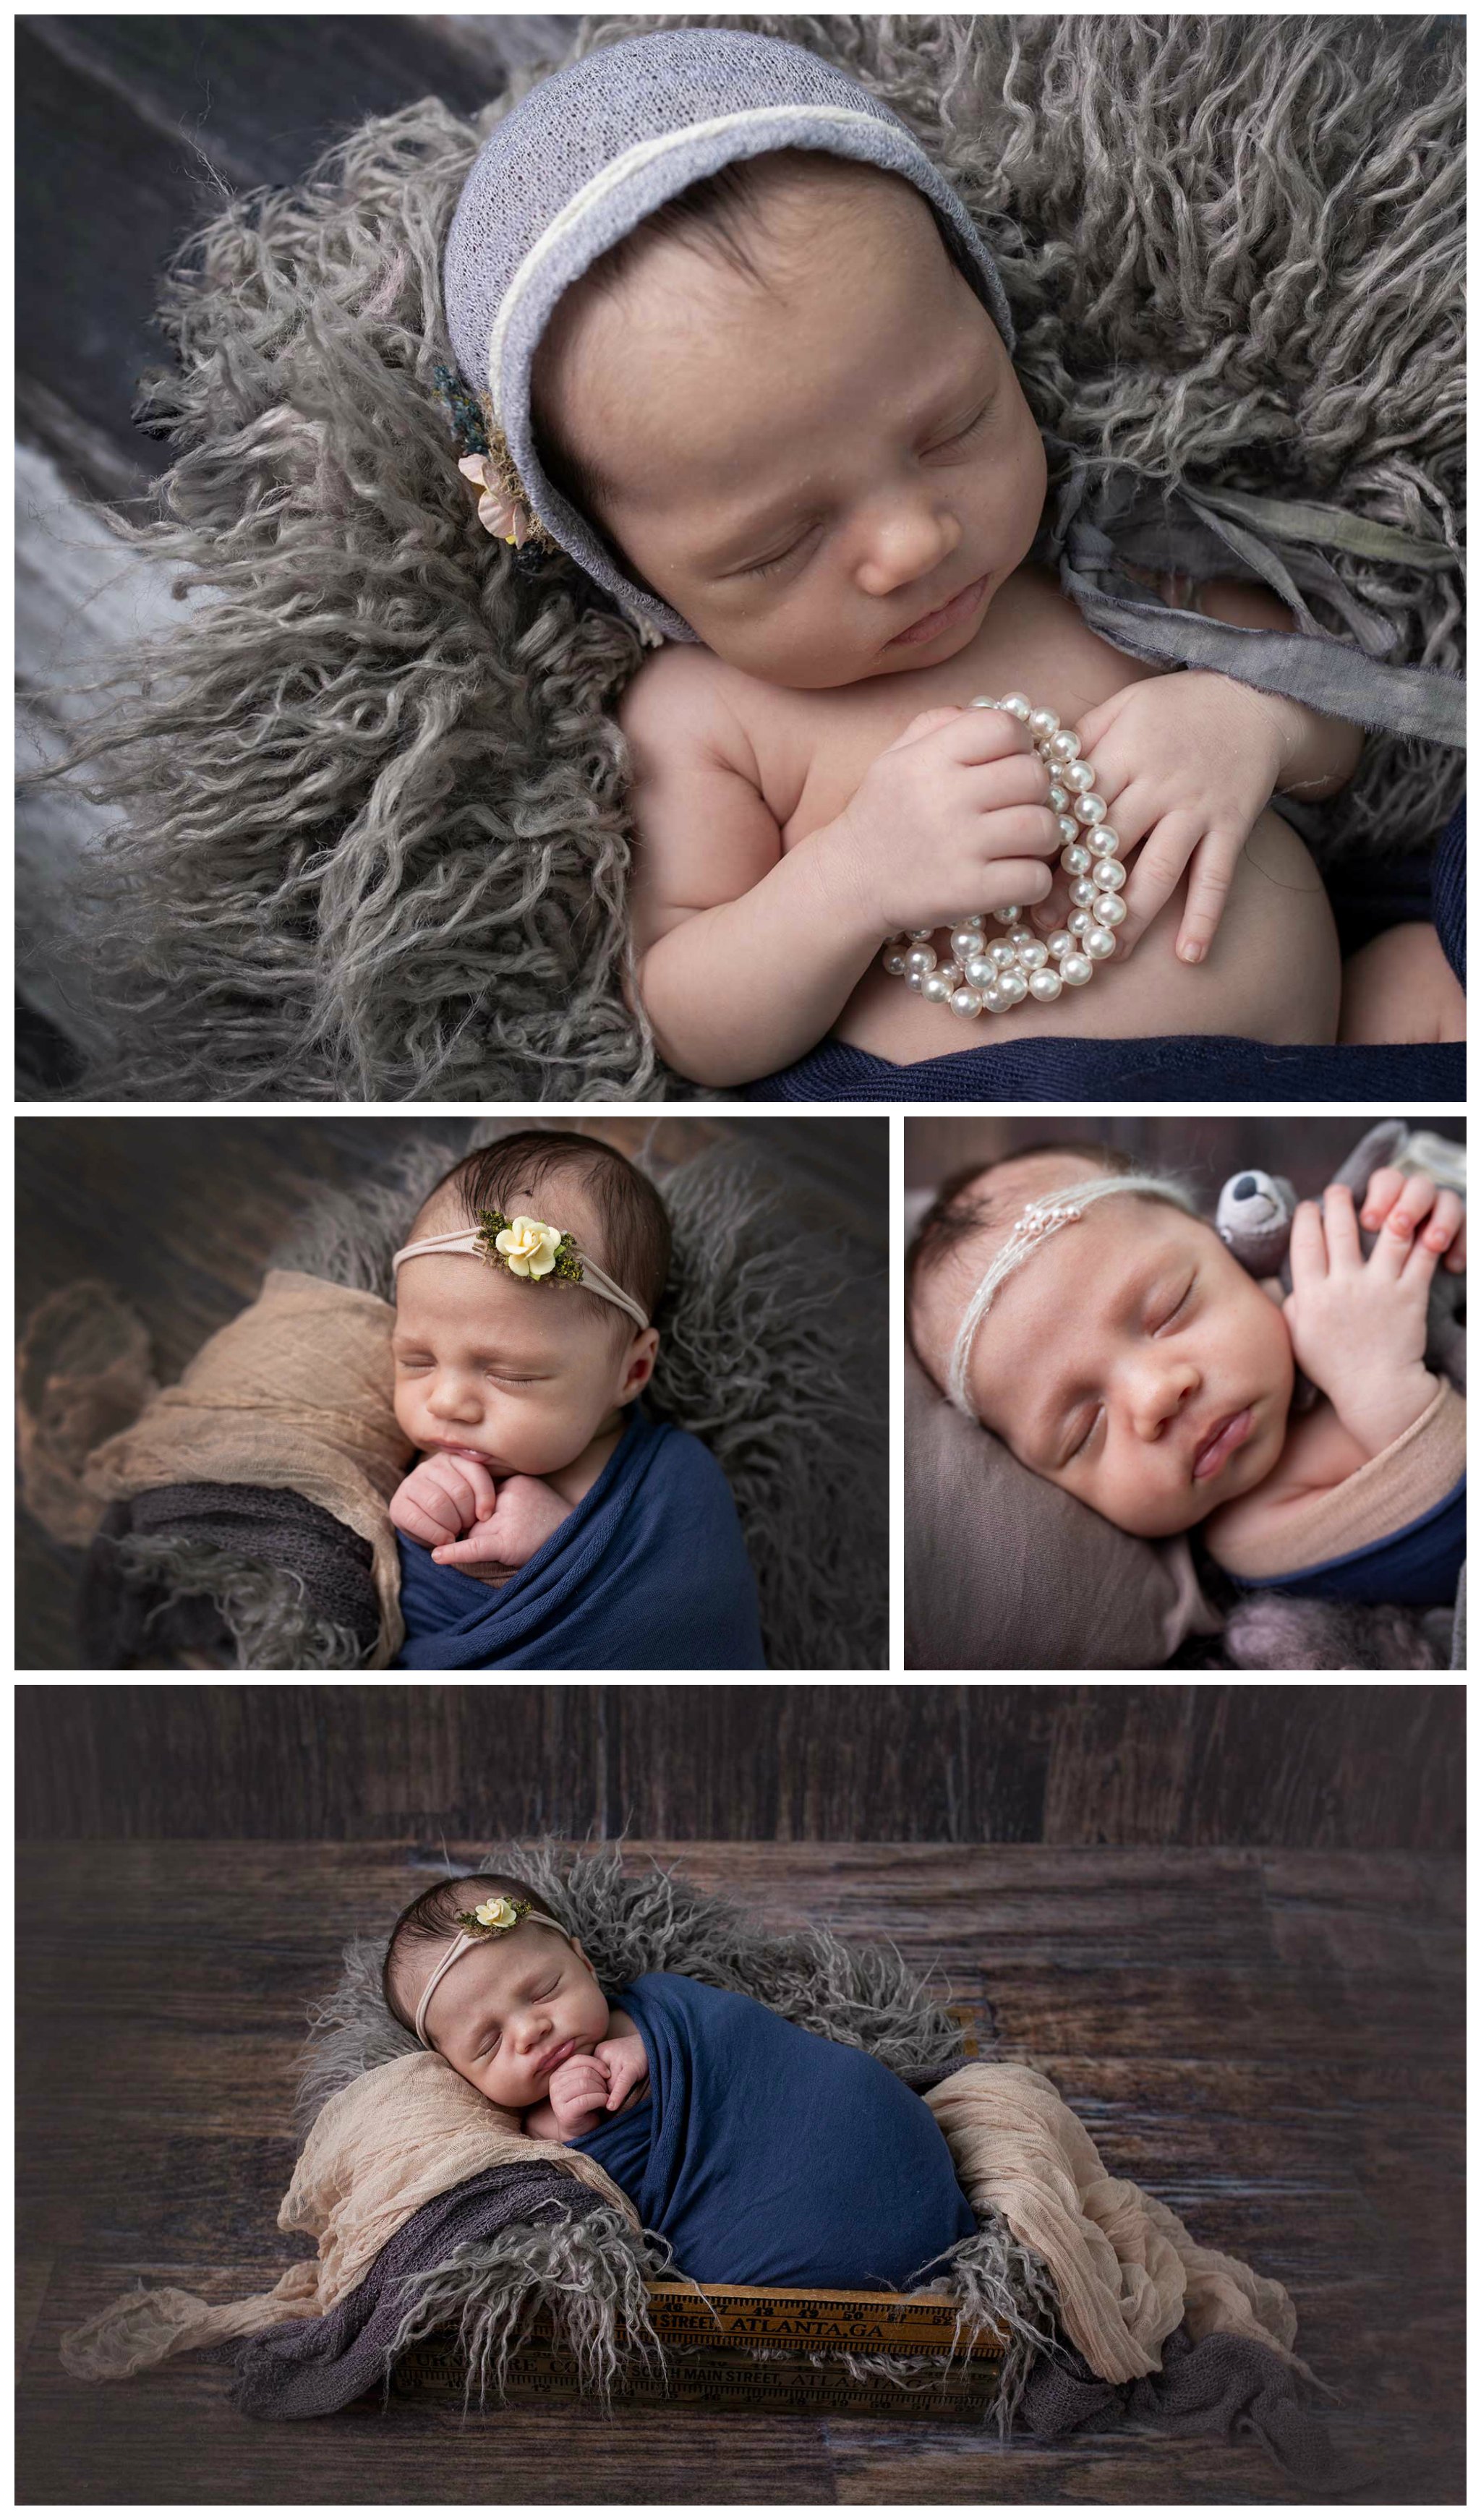 Newborn girl photo session | newborn photographer in Wylie tx | #FamilyPortraitsWylie #MaternityPhotographerWylie #MaternityPhotography  #NewbornPhotographerWylie #NewbornGirlPhotographyDallas #LDPortraits #YouAreMyHeart